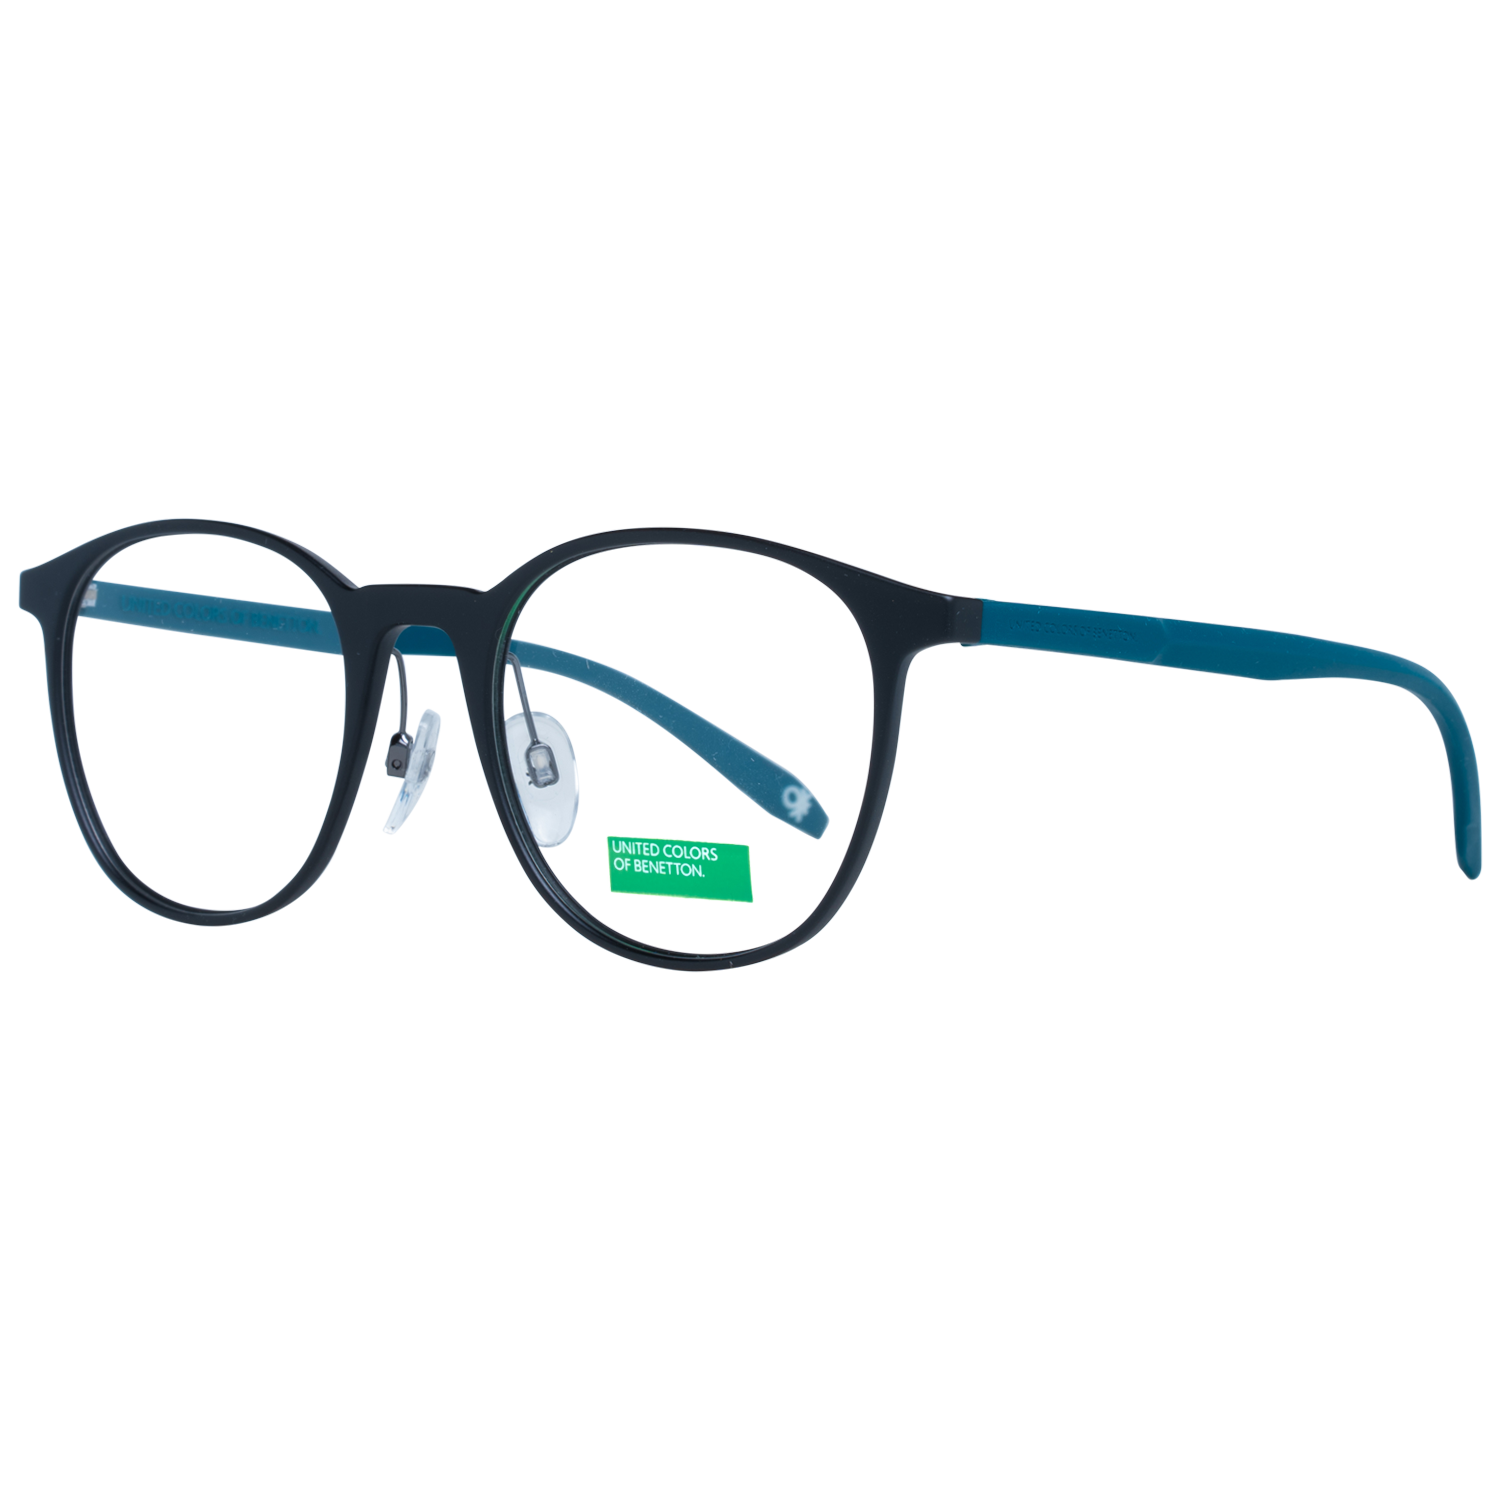 Benetton Frames Benetton Glasses Frames BEO1010 001 51 Eyeglasses Eyewear UK USA Australia 